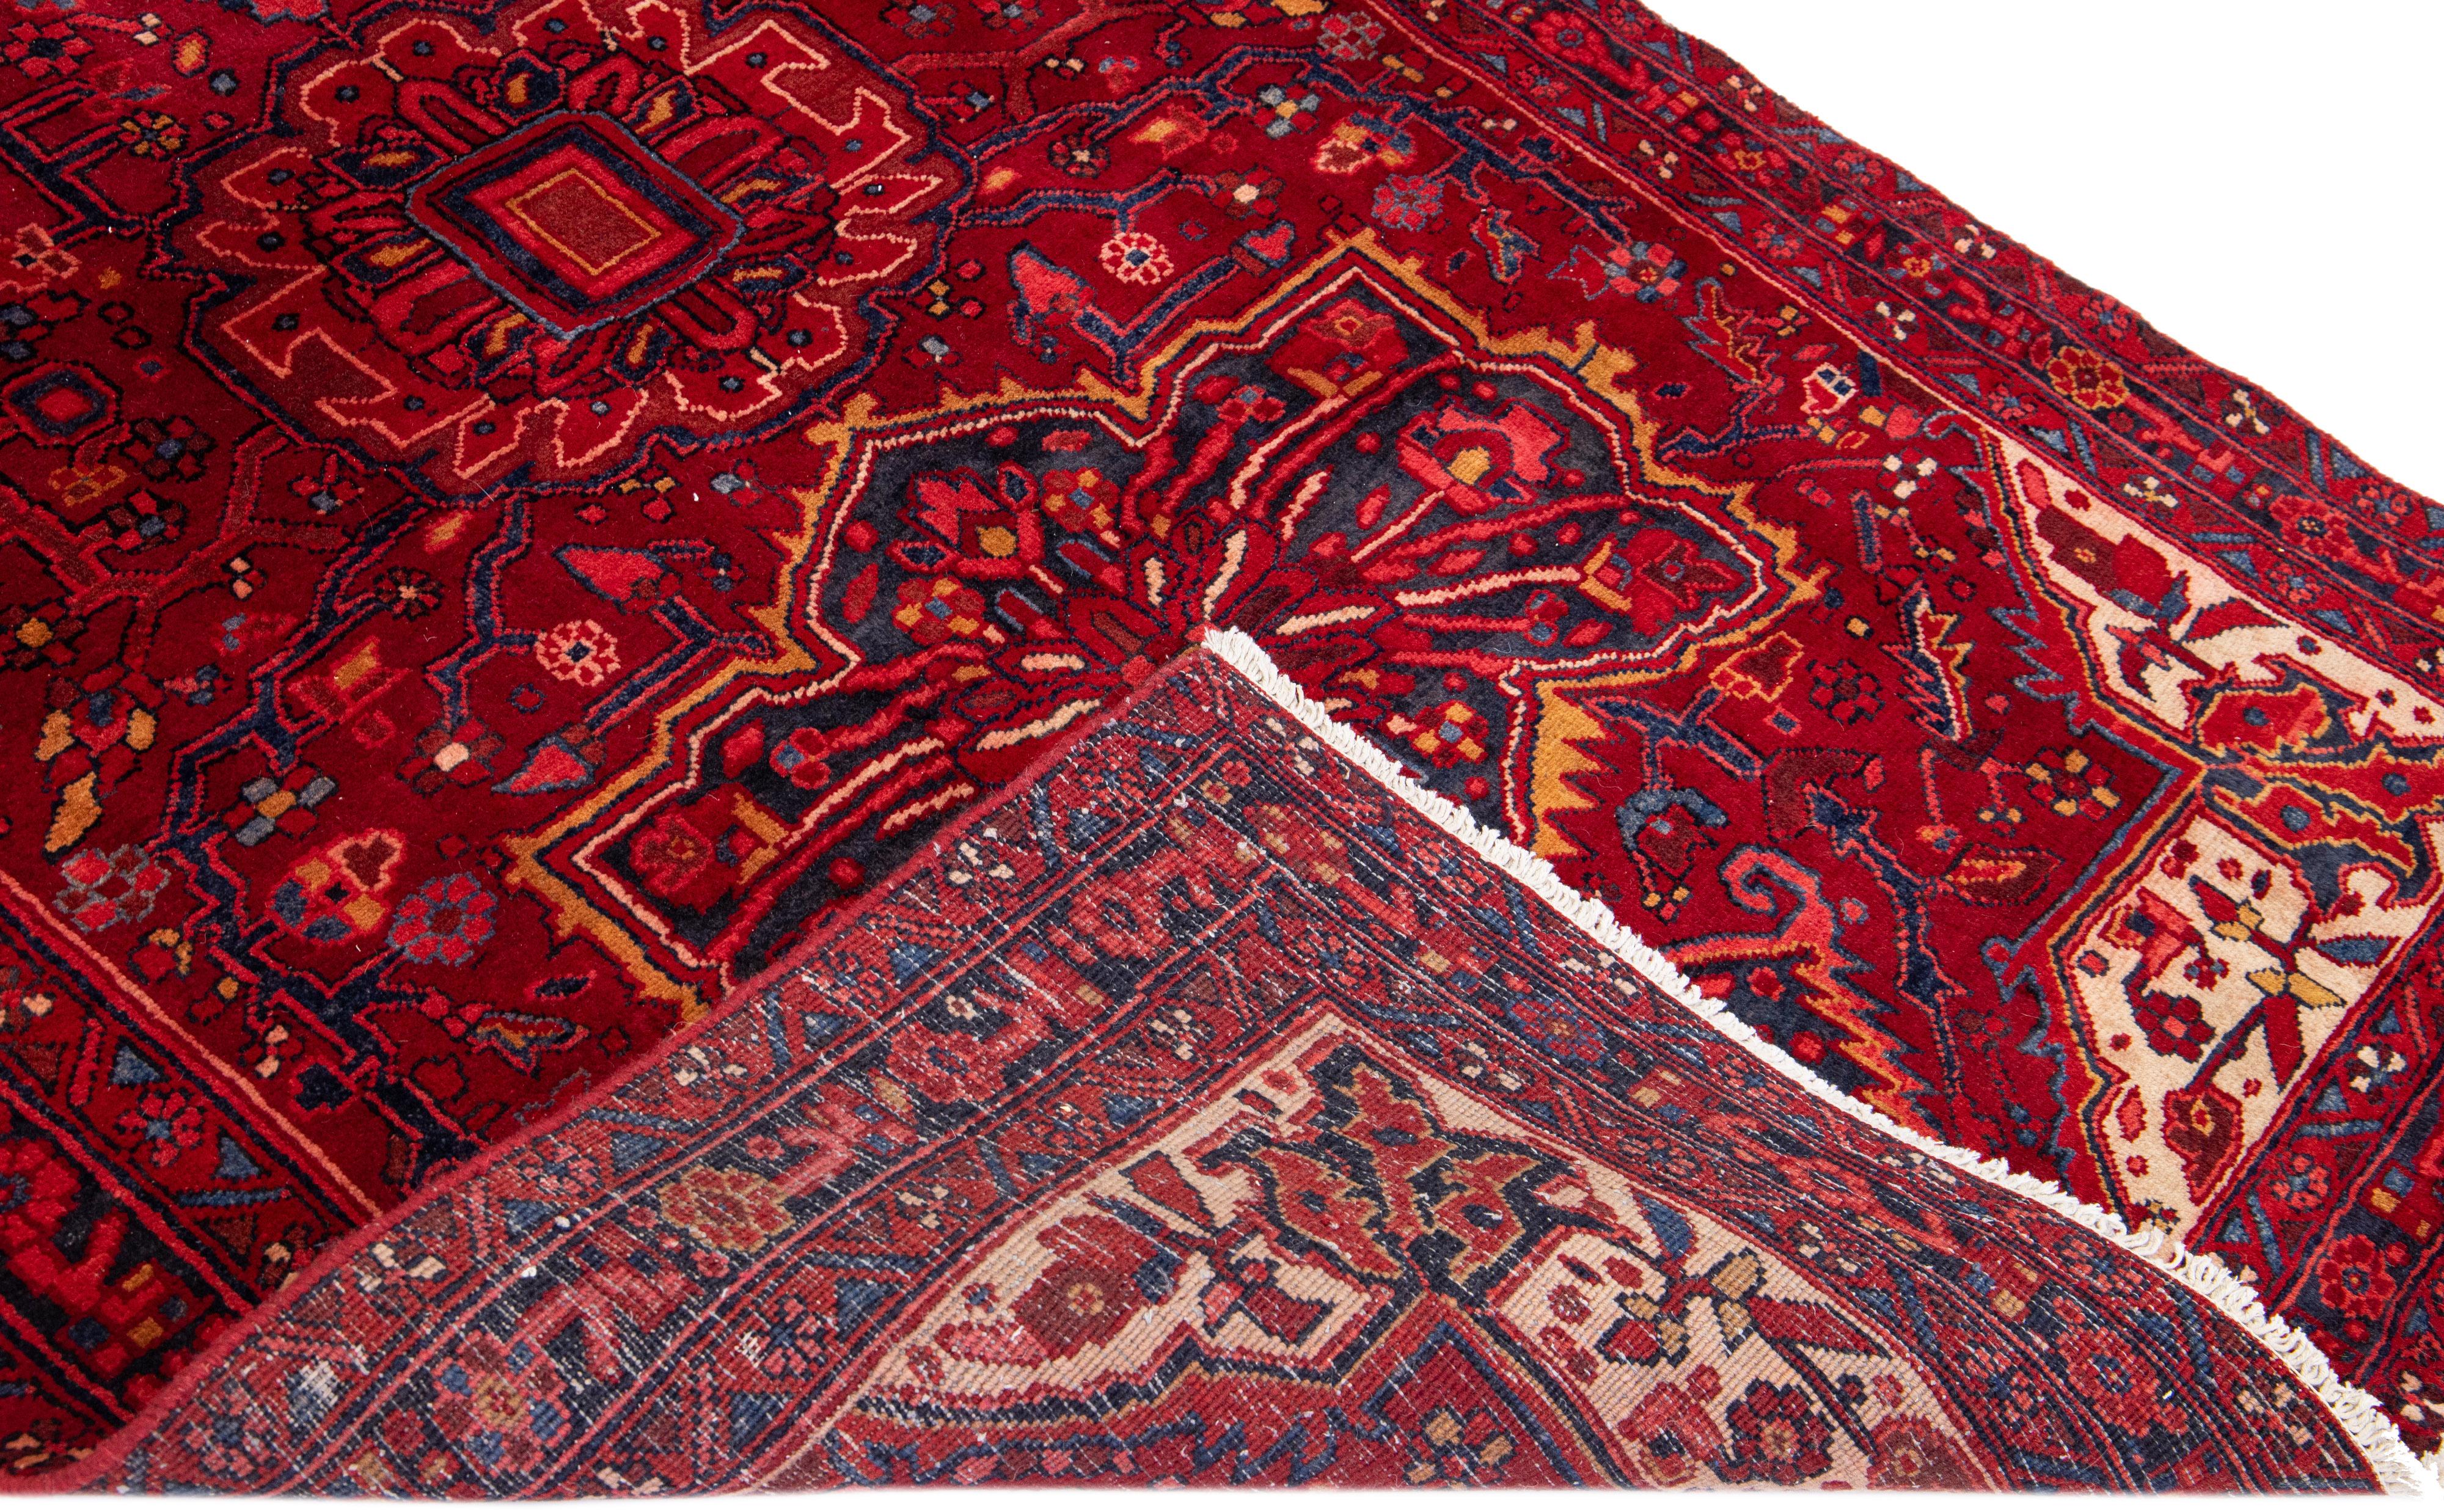 Schöner antiker, handgeknüpfter Heriz-Wollteppich mit rotem Feld. Dieser Heriz-Teppich hat einen marineblauen Rahmen und mehrfarbige Akzente in einem prächtigen floralen Medaillonmuster.

Dieser Teppich misst: 5'1